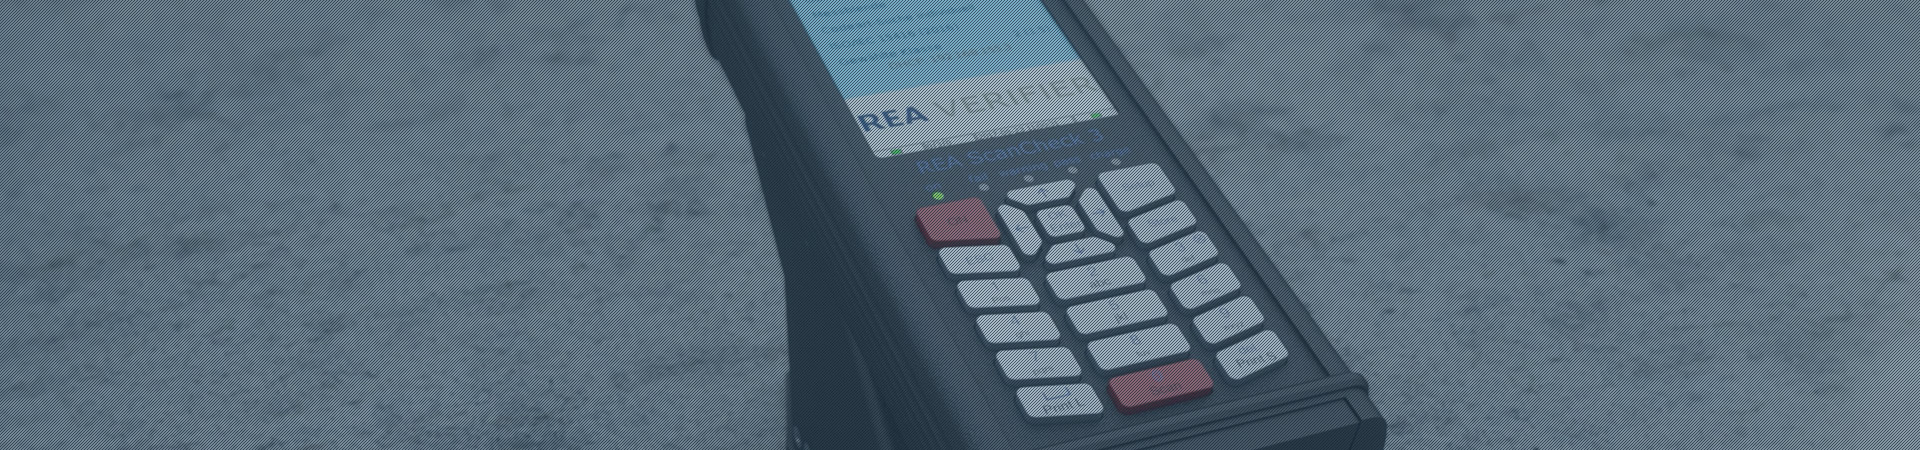 Barcode verifier - Header - REA Scan Check 3